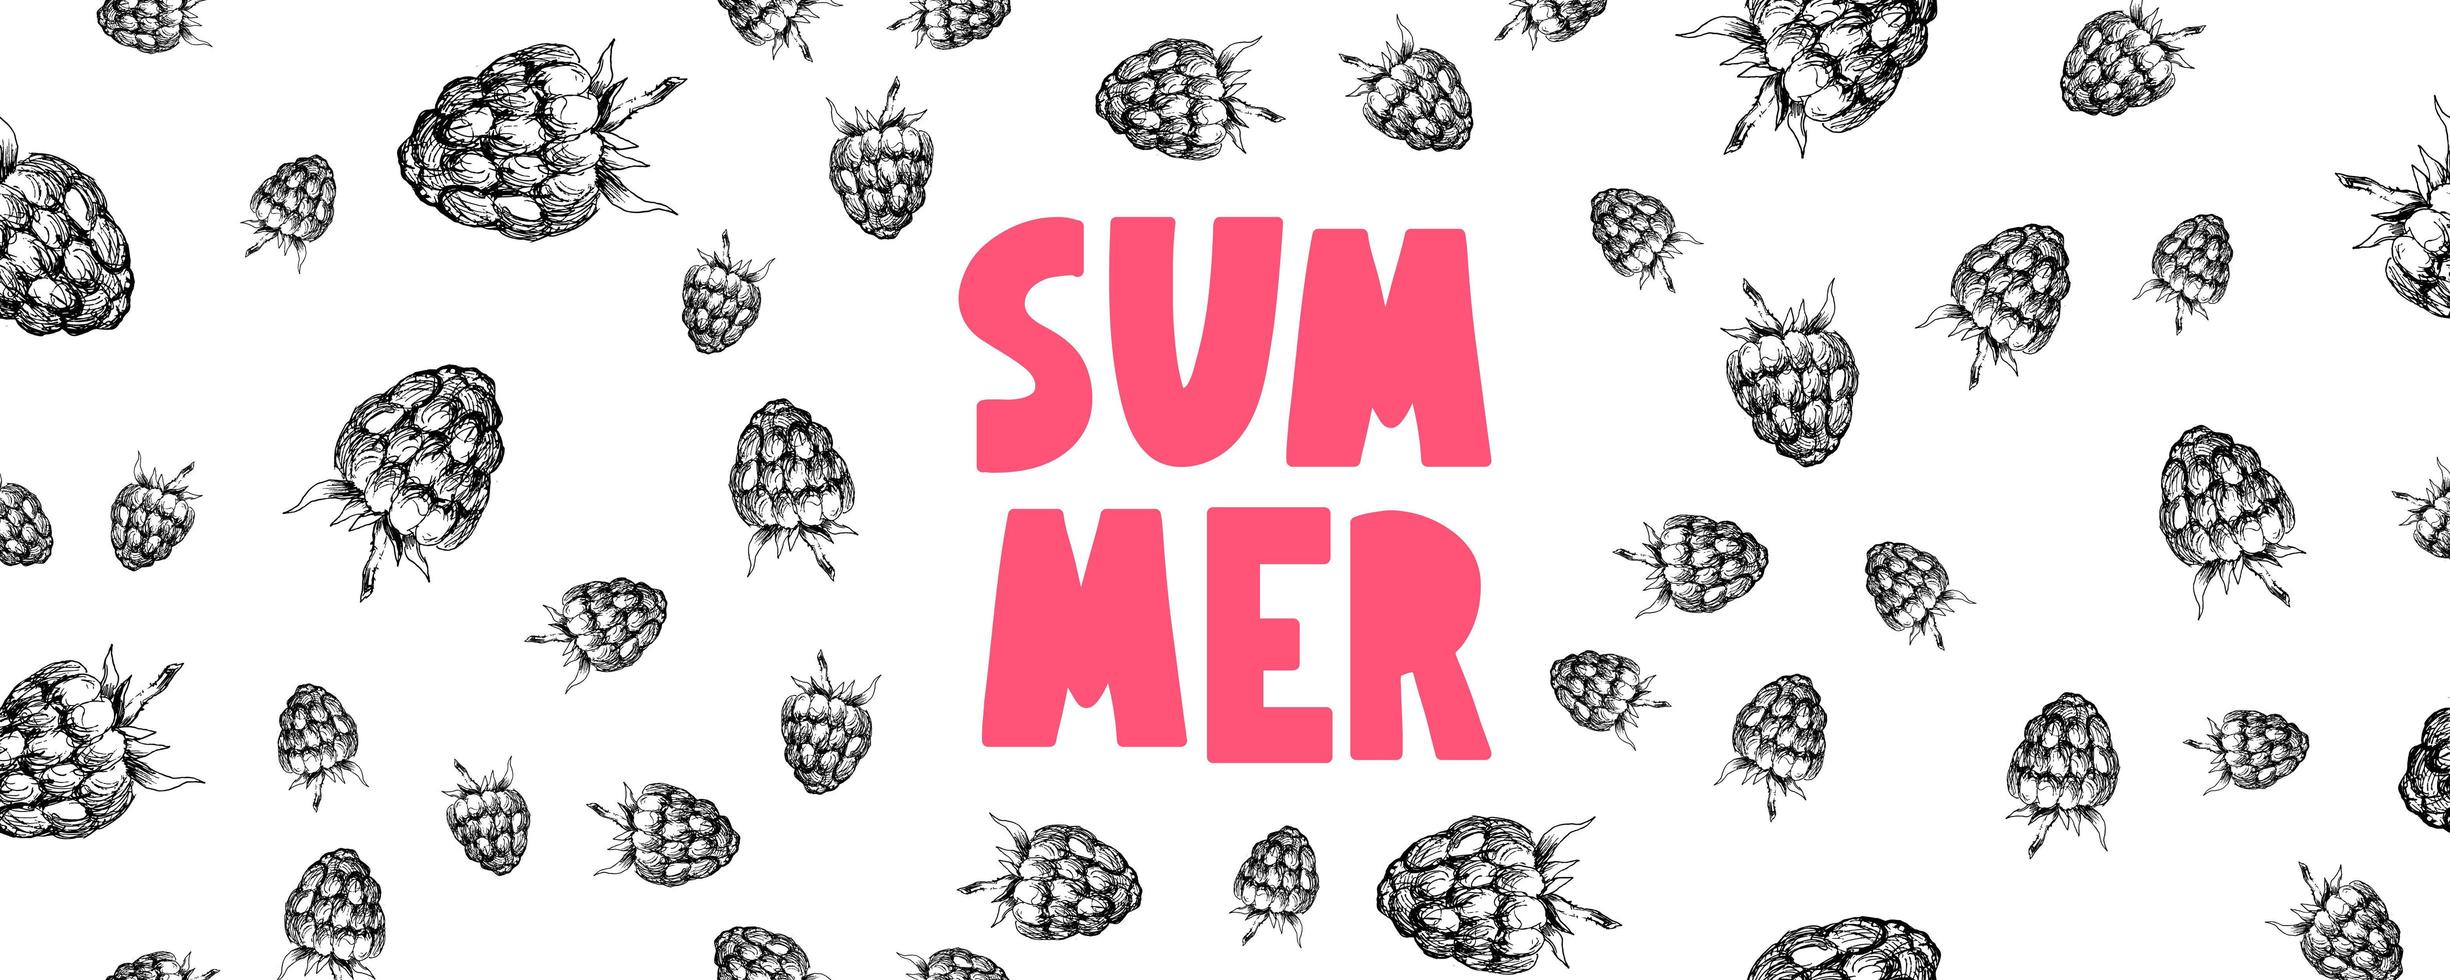 bannière de vente d'été avec vecteur de lettre de fruits framboise baies